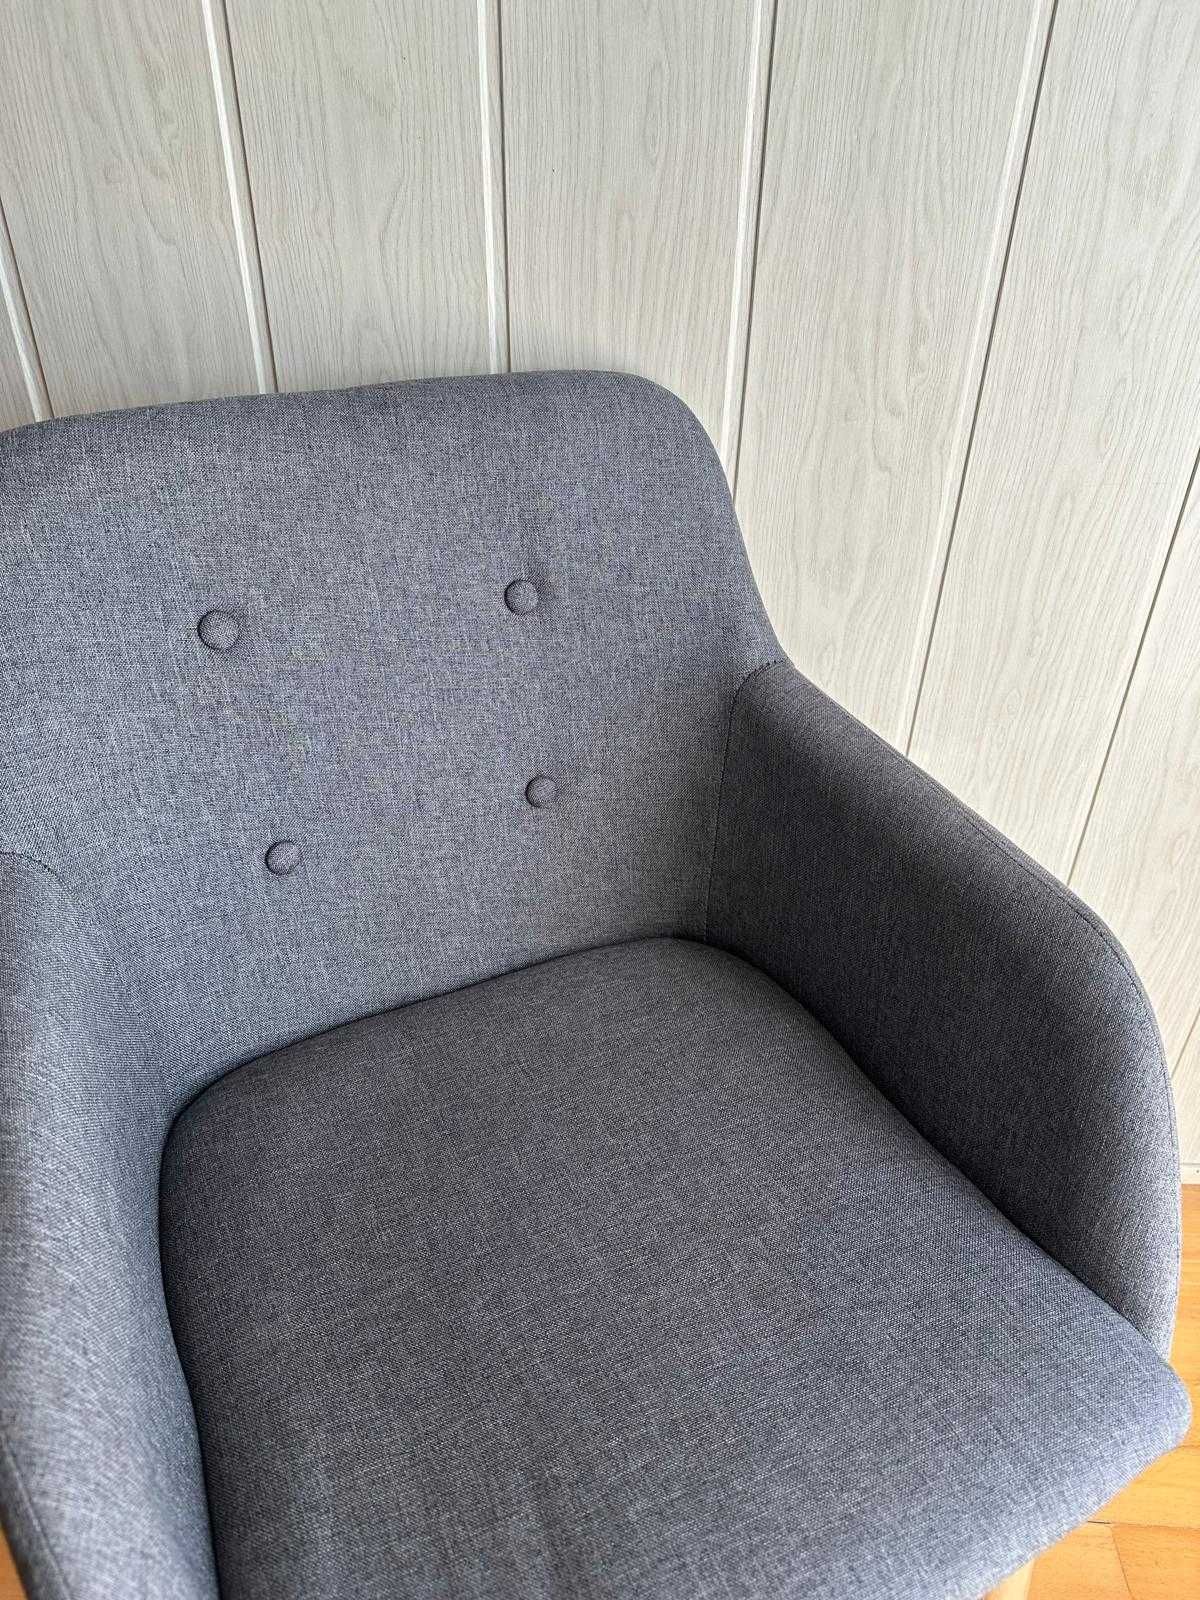 Krzesło tapicerowane w stylu skandynawskim szare biurowe